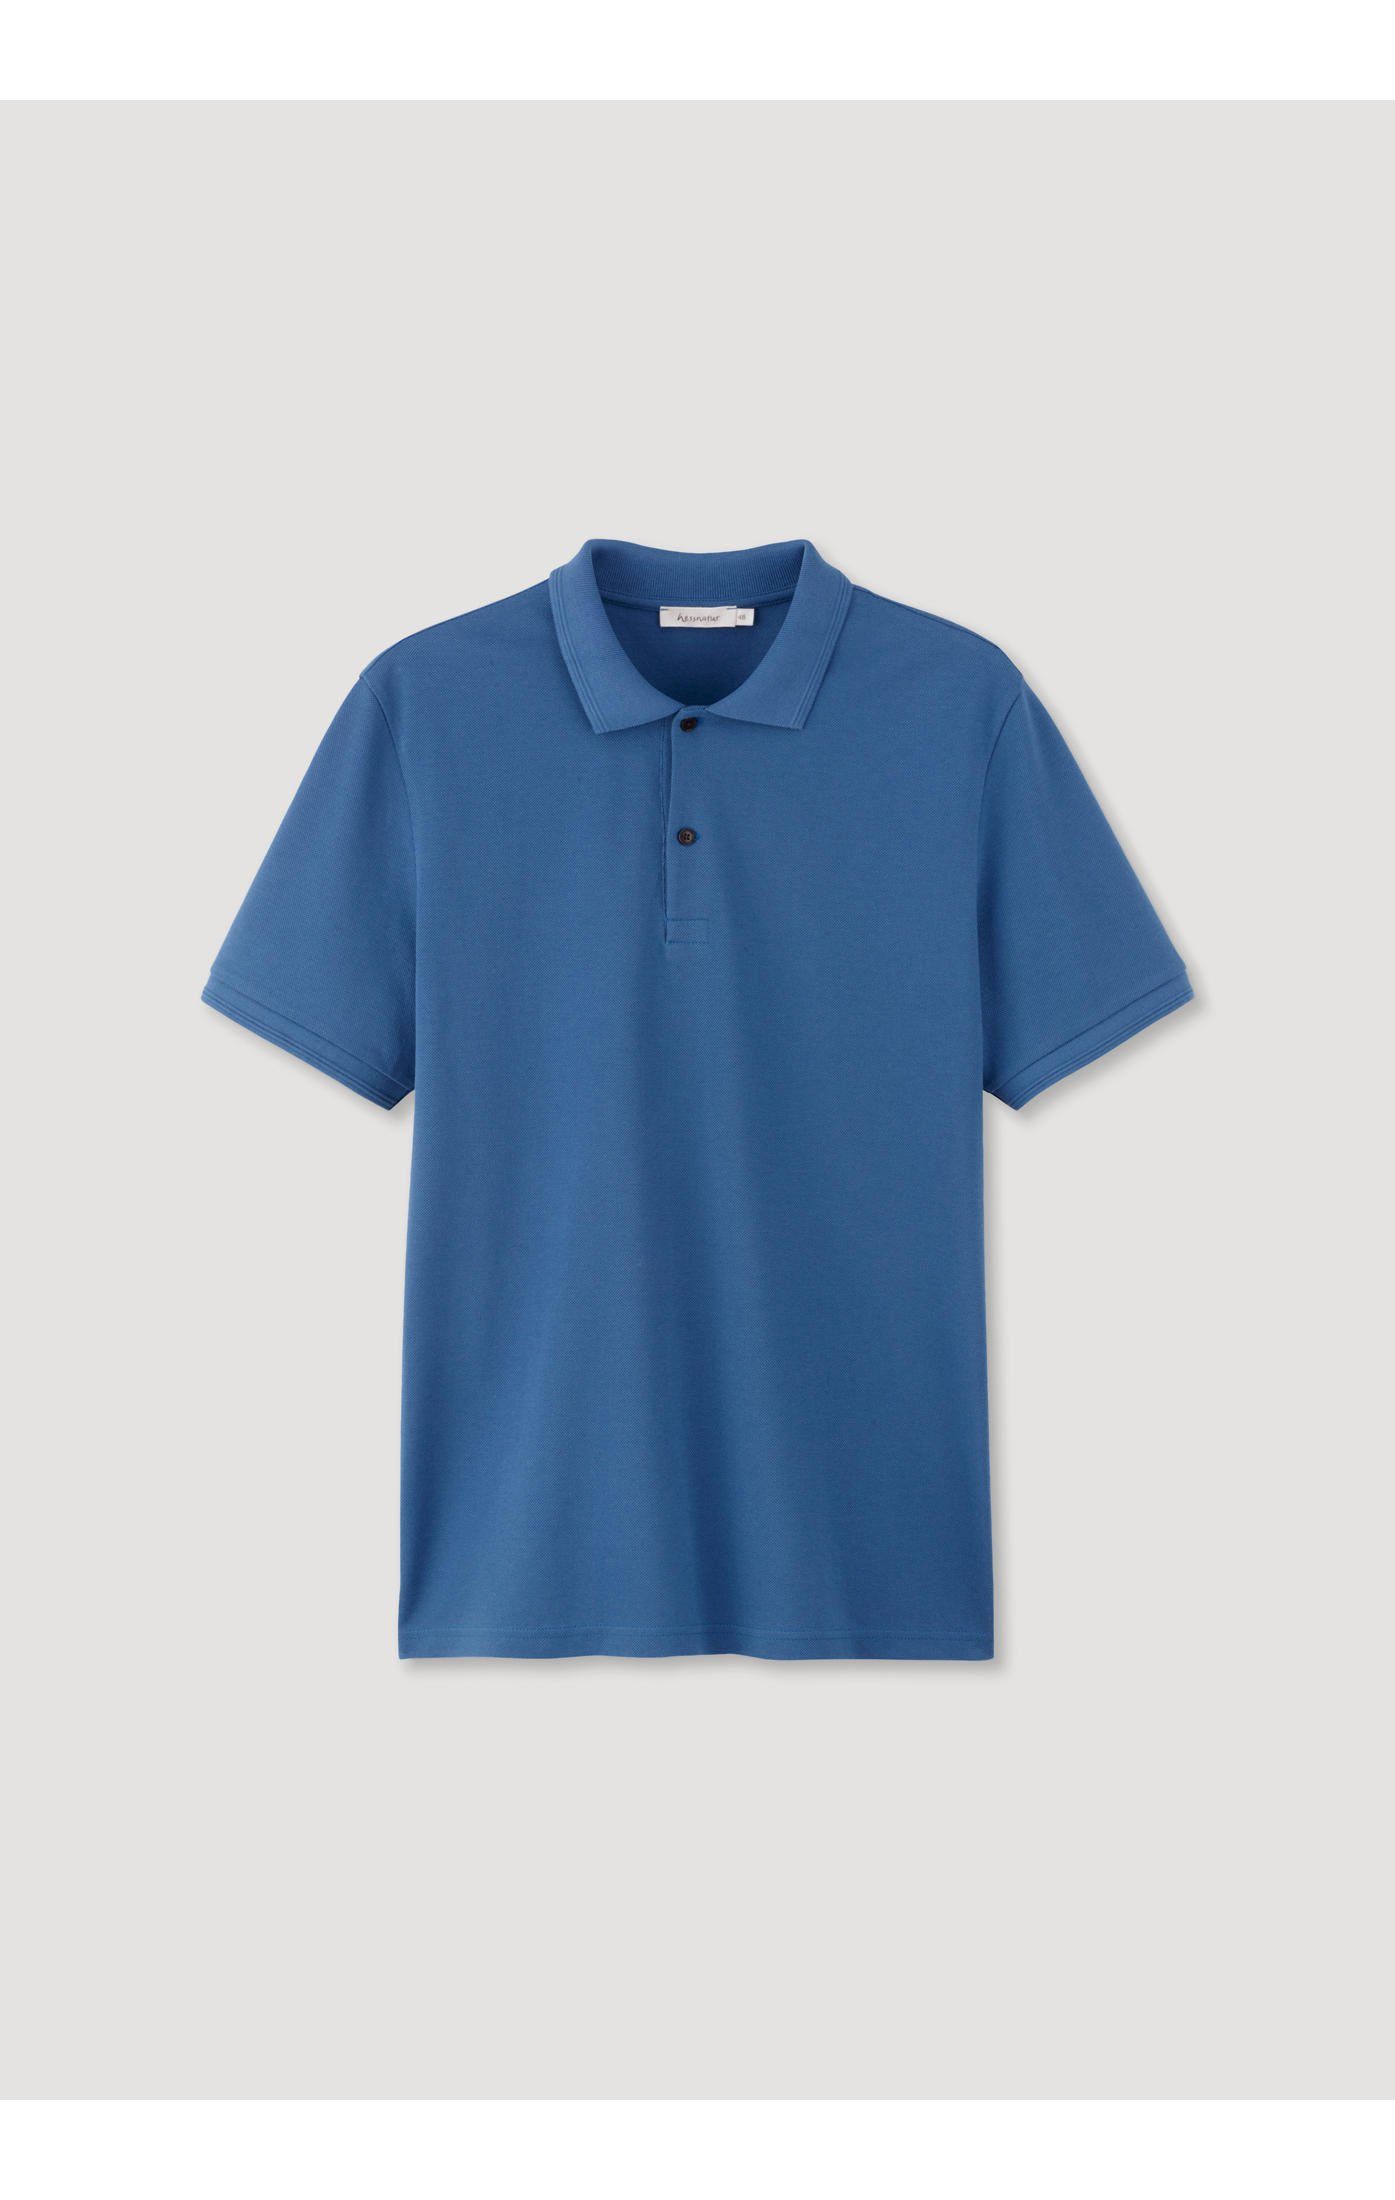 aus Hessnatur T-Shirt Zwirnjersey kobaltblau reiner Bio-Baumwolle